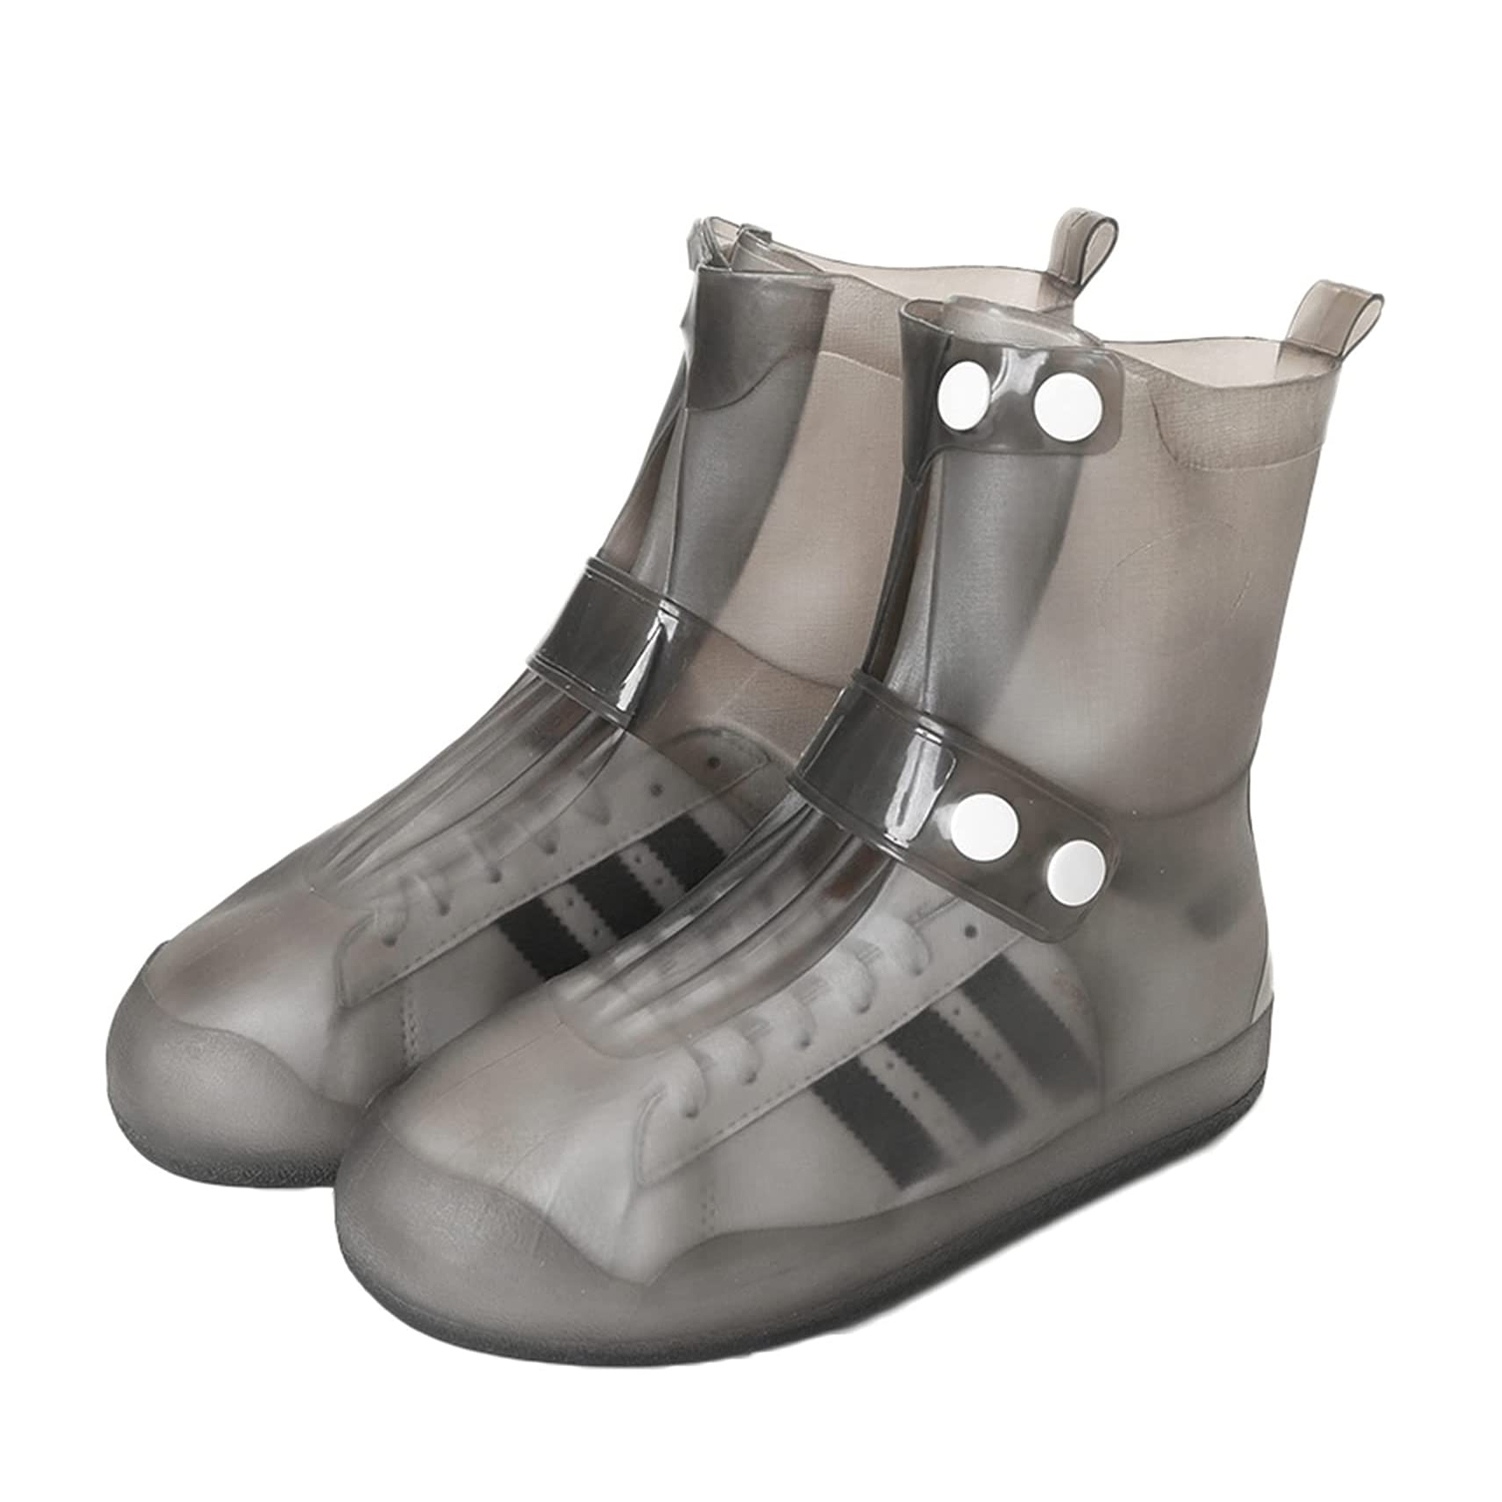 Фото Cиликоновые чехлы-бахилы для обуви с застежкой XL 44-45 CG WSS3 Black